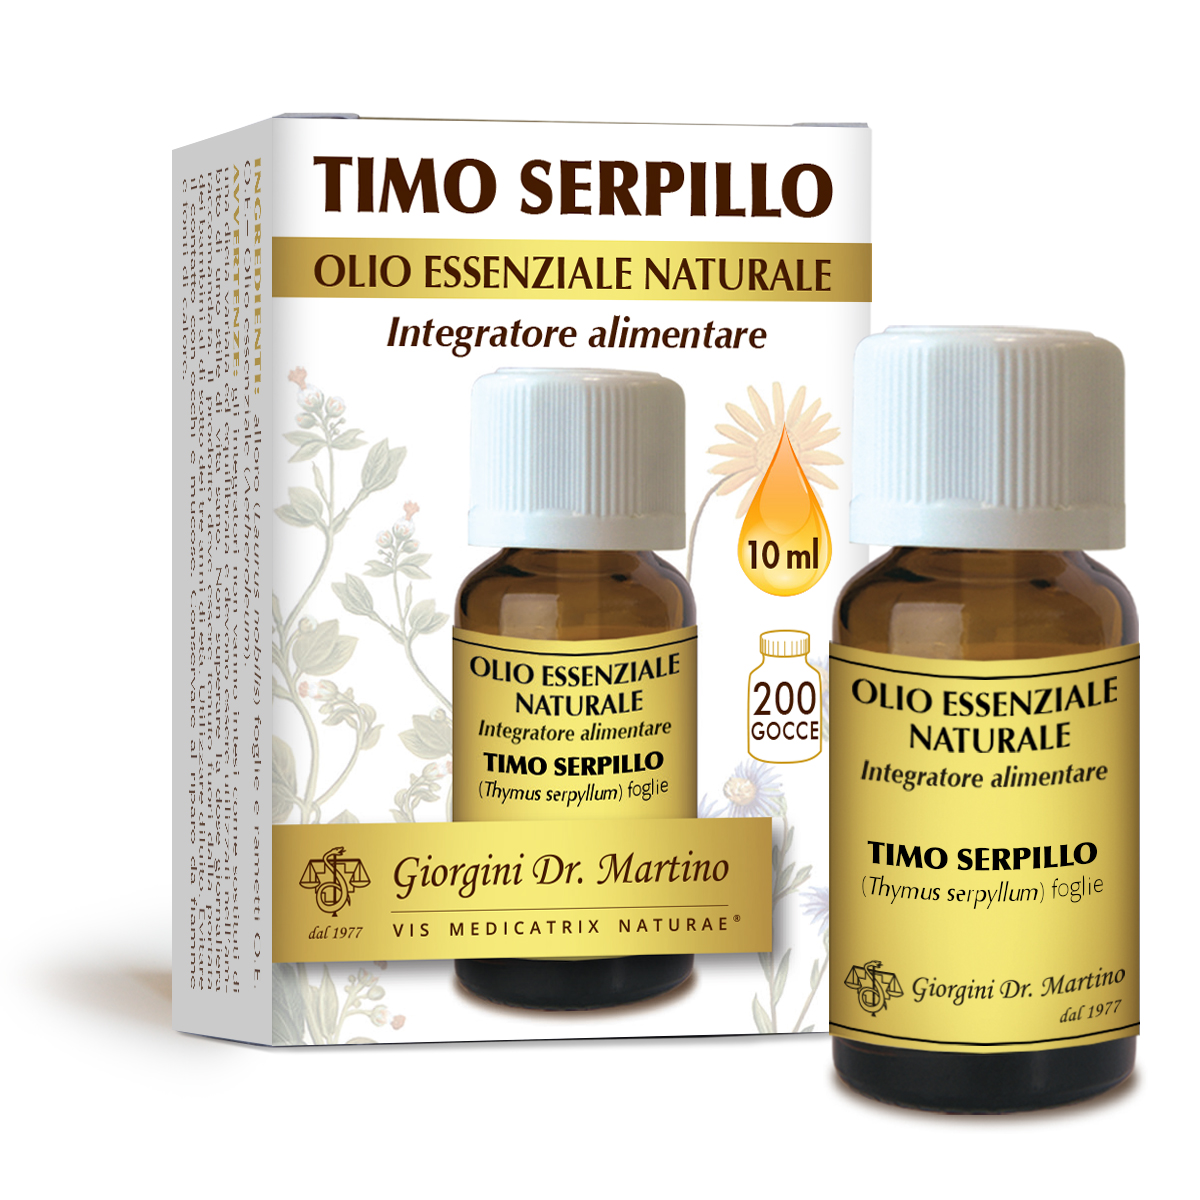 TIMO SERPILLO olio essenzialenaturale 10 ml